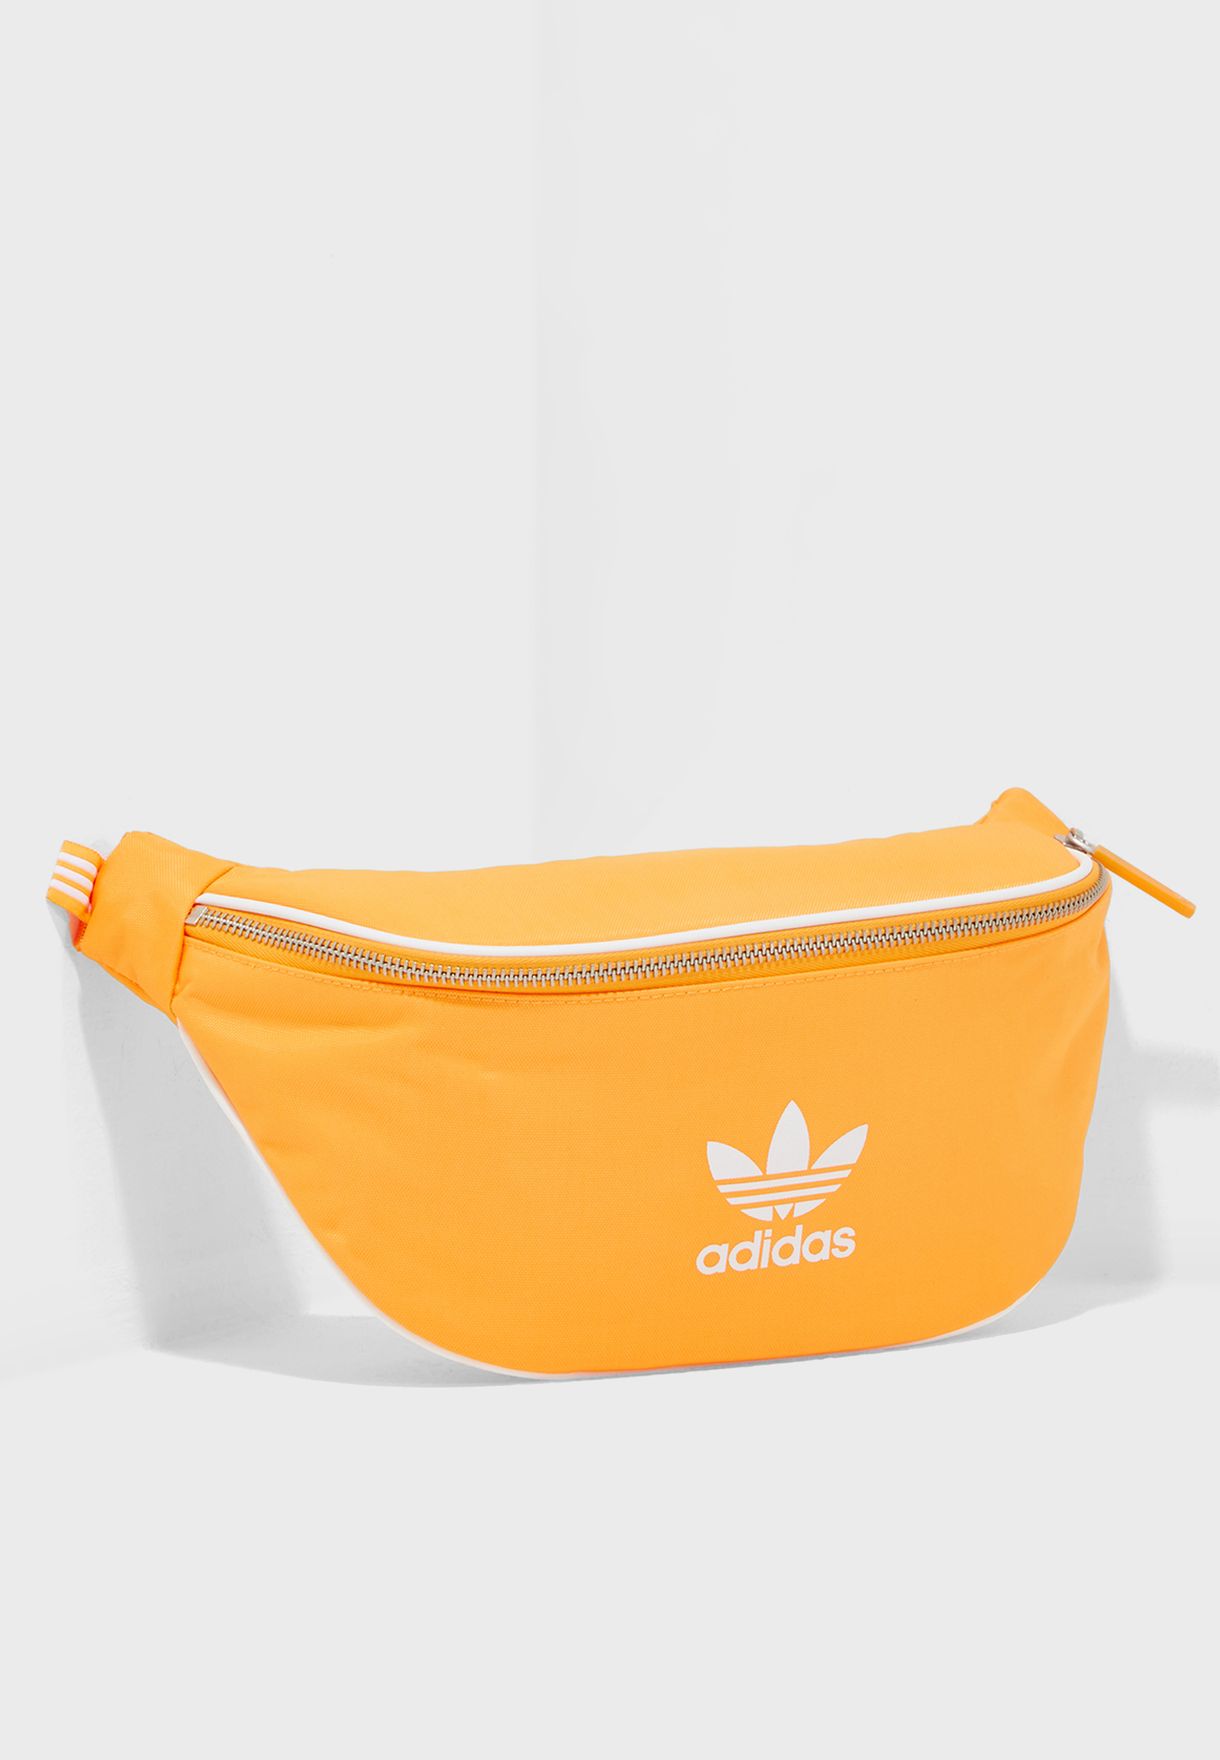 adidas fanny pack orange